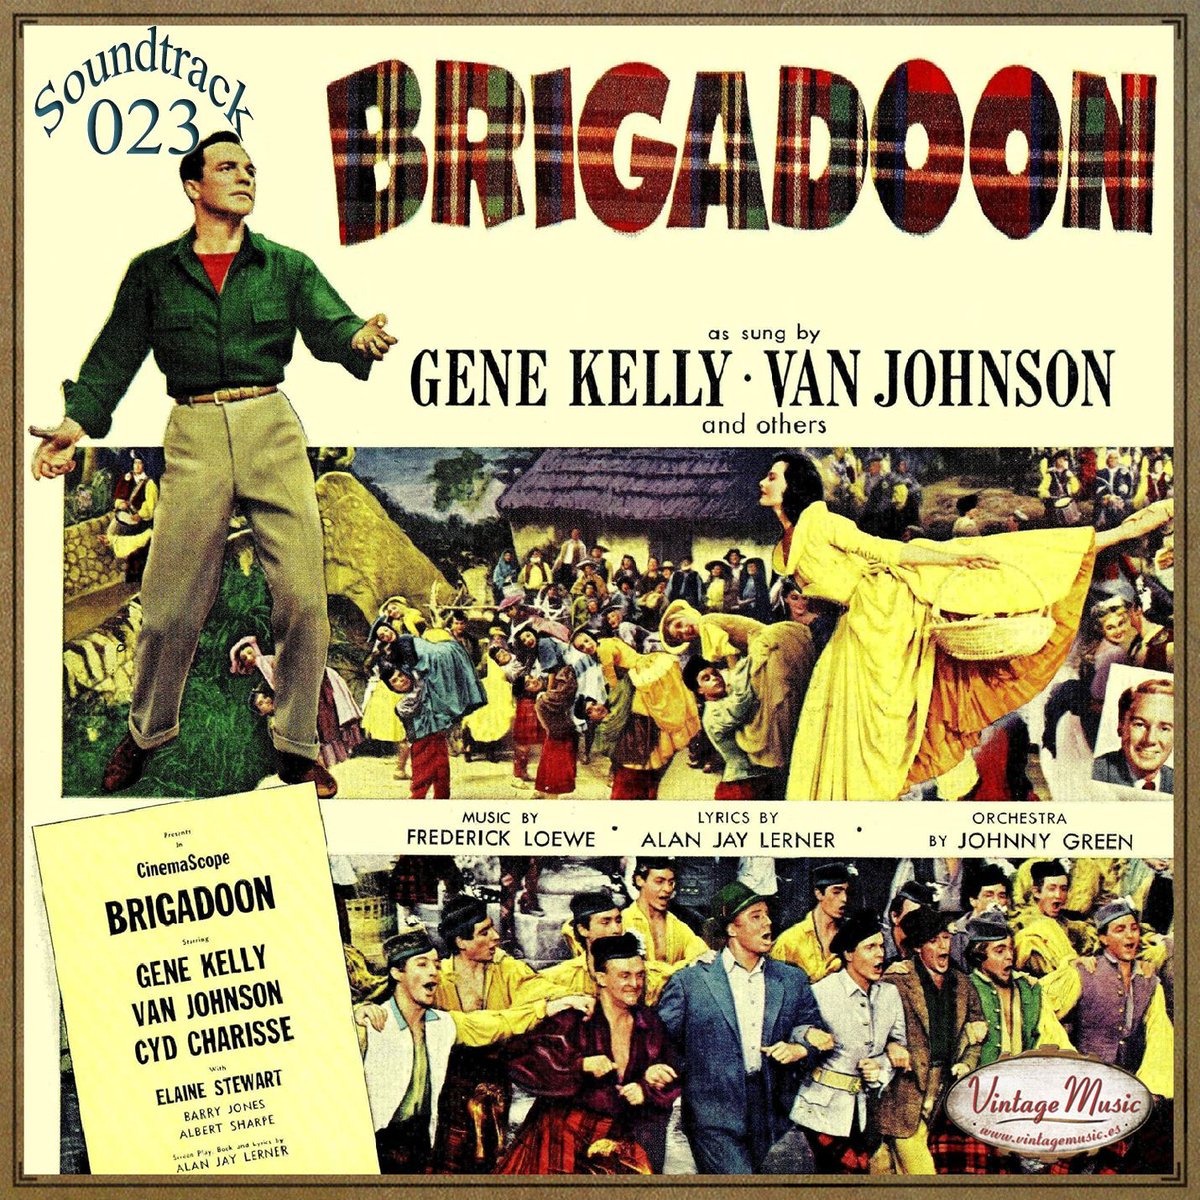 esquemas característicos dio paso a un renacimiento del género.En 1954 Gene Kelly rodó "Brigadoon", de nuevo con Vincente Minnelli, al lado de Van Johnson y Cyd Charisse.Después inició una nueva etapa con "Invitation to the Dance" (1956), centrándose en su labor como